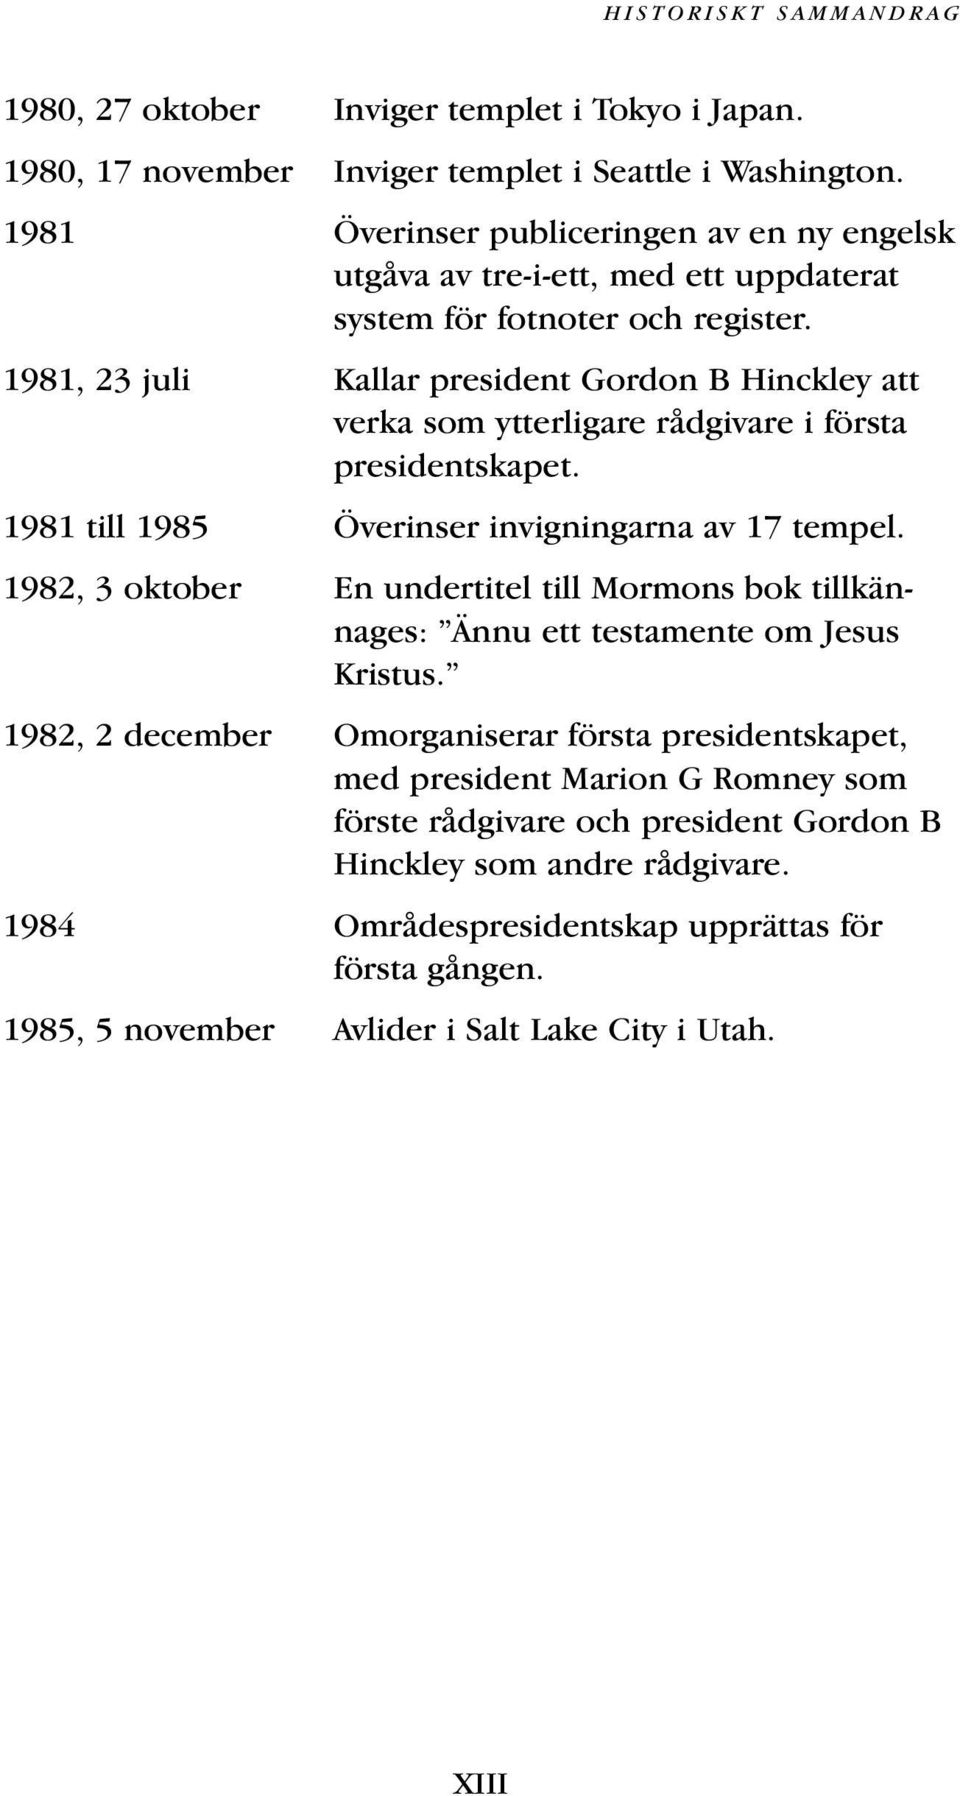 1981, 23 juli Kallar president Gordon B Hinckley att verka som ytterligare rådgivare i första presidentskapet. 1981 till 1985 Överinser invigningarna av 17 tempel.